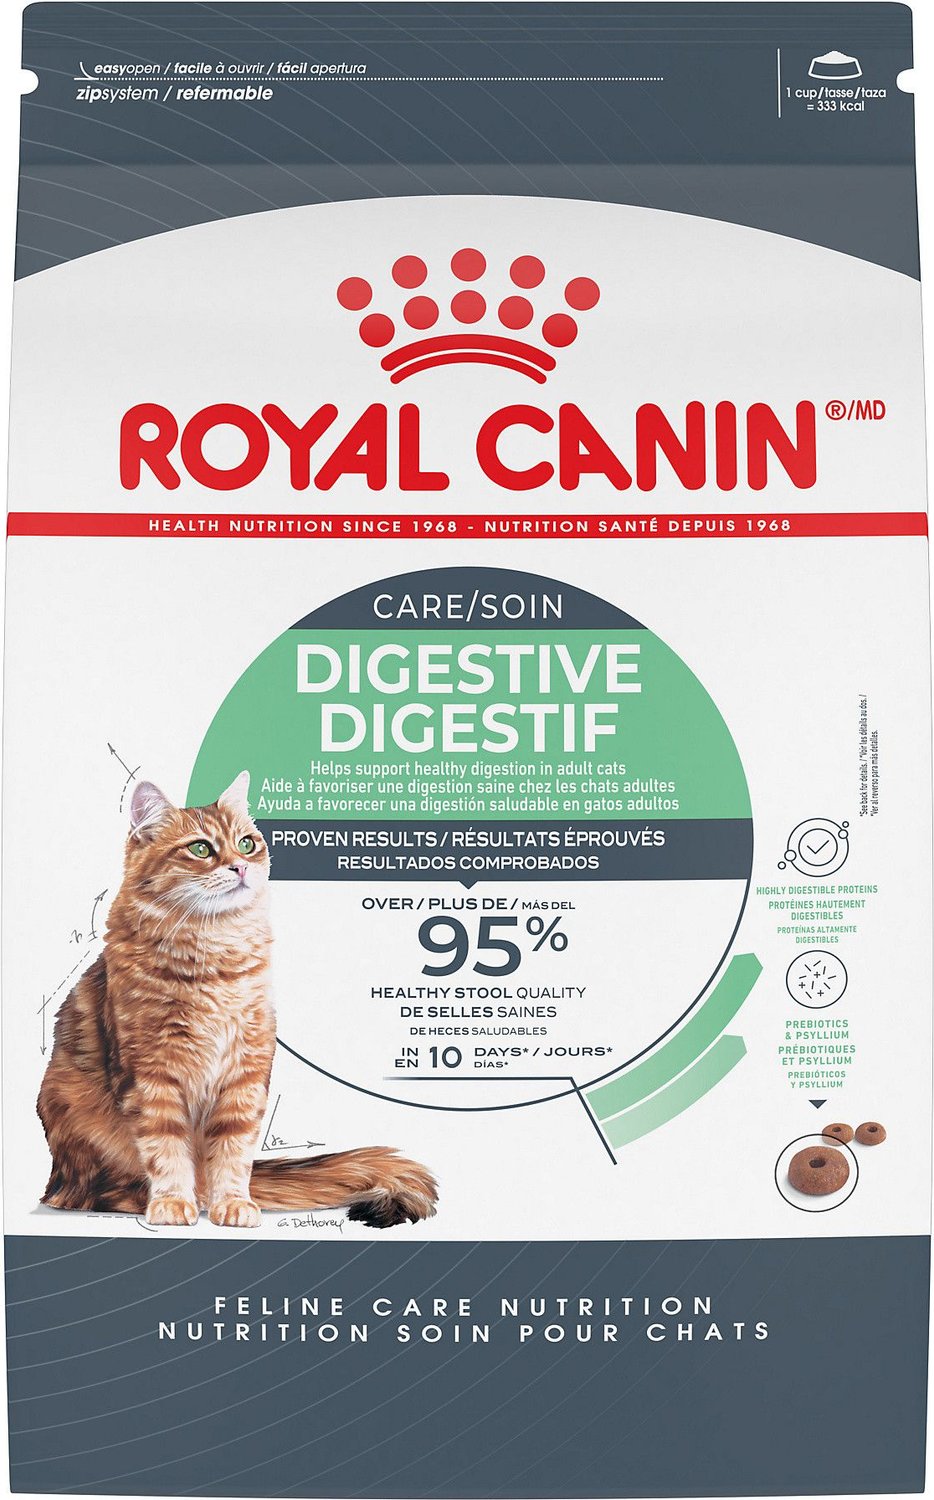 royal canin cat kibble